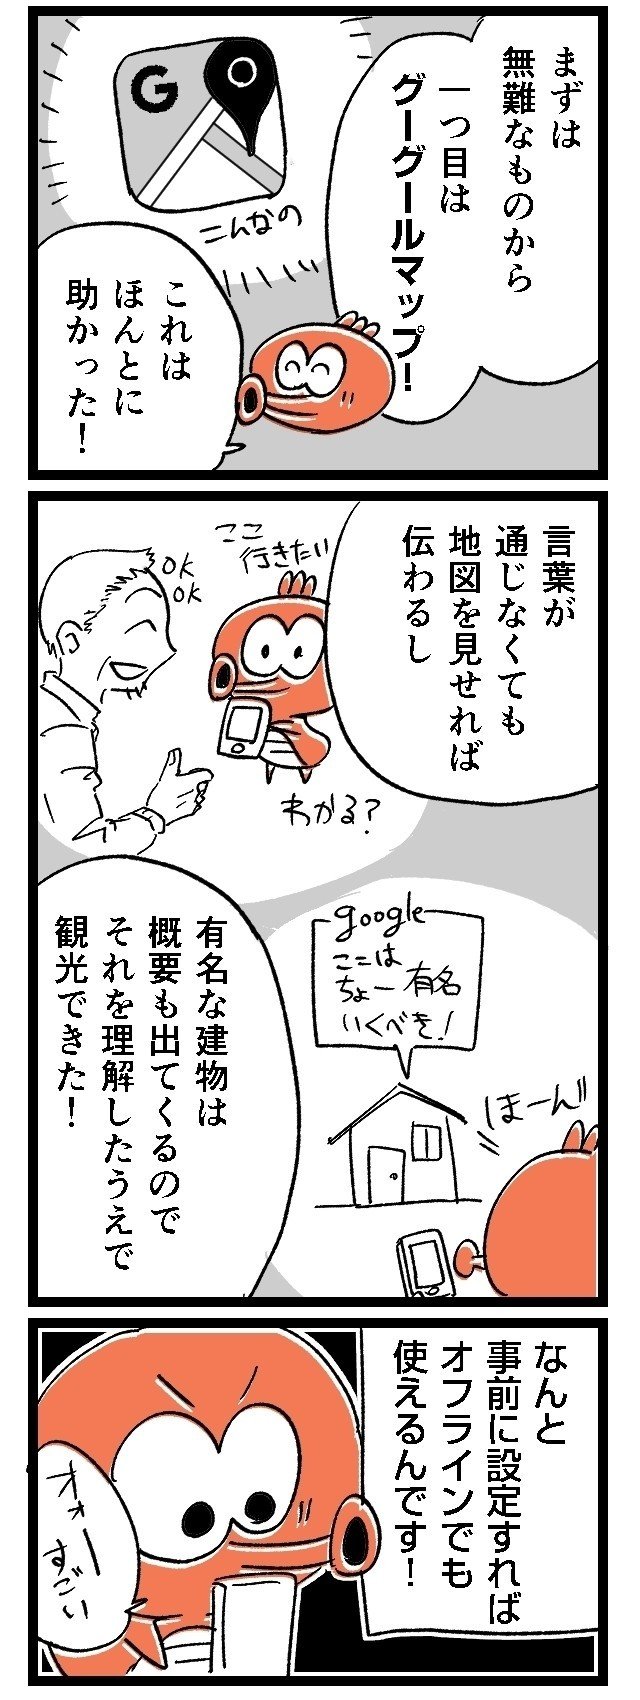 03ルポ漫画旅行_002